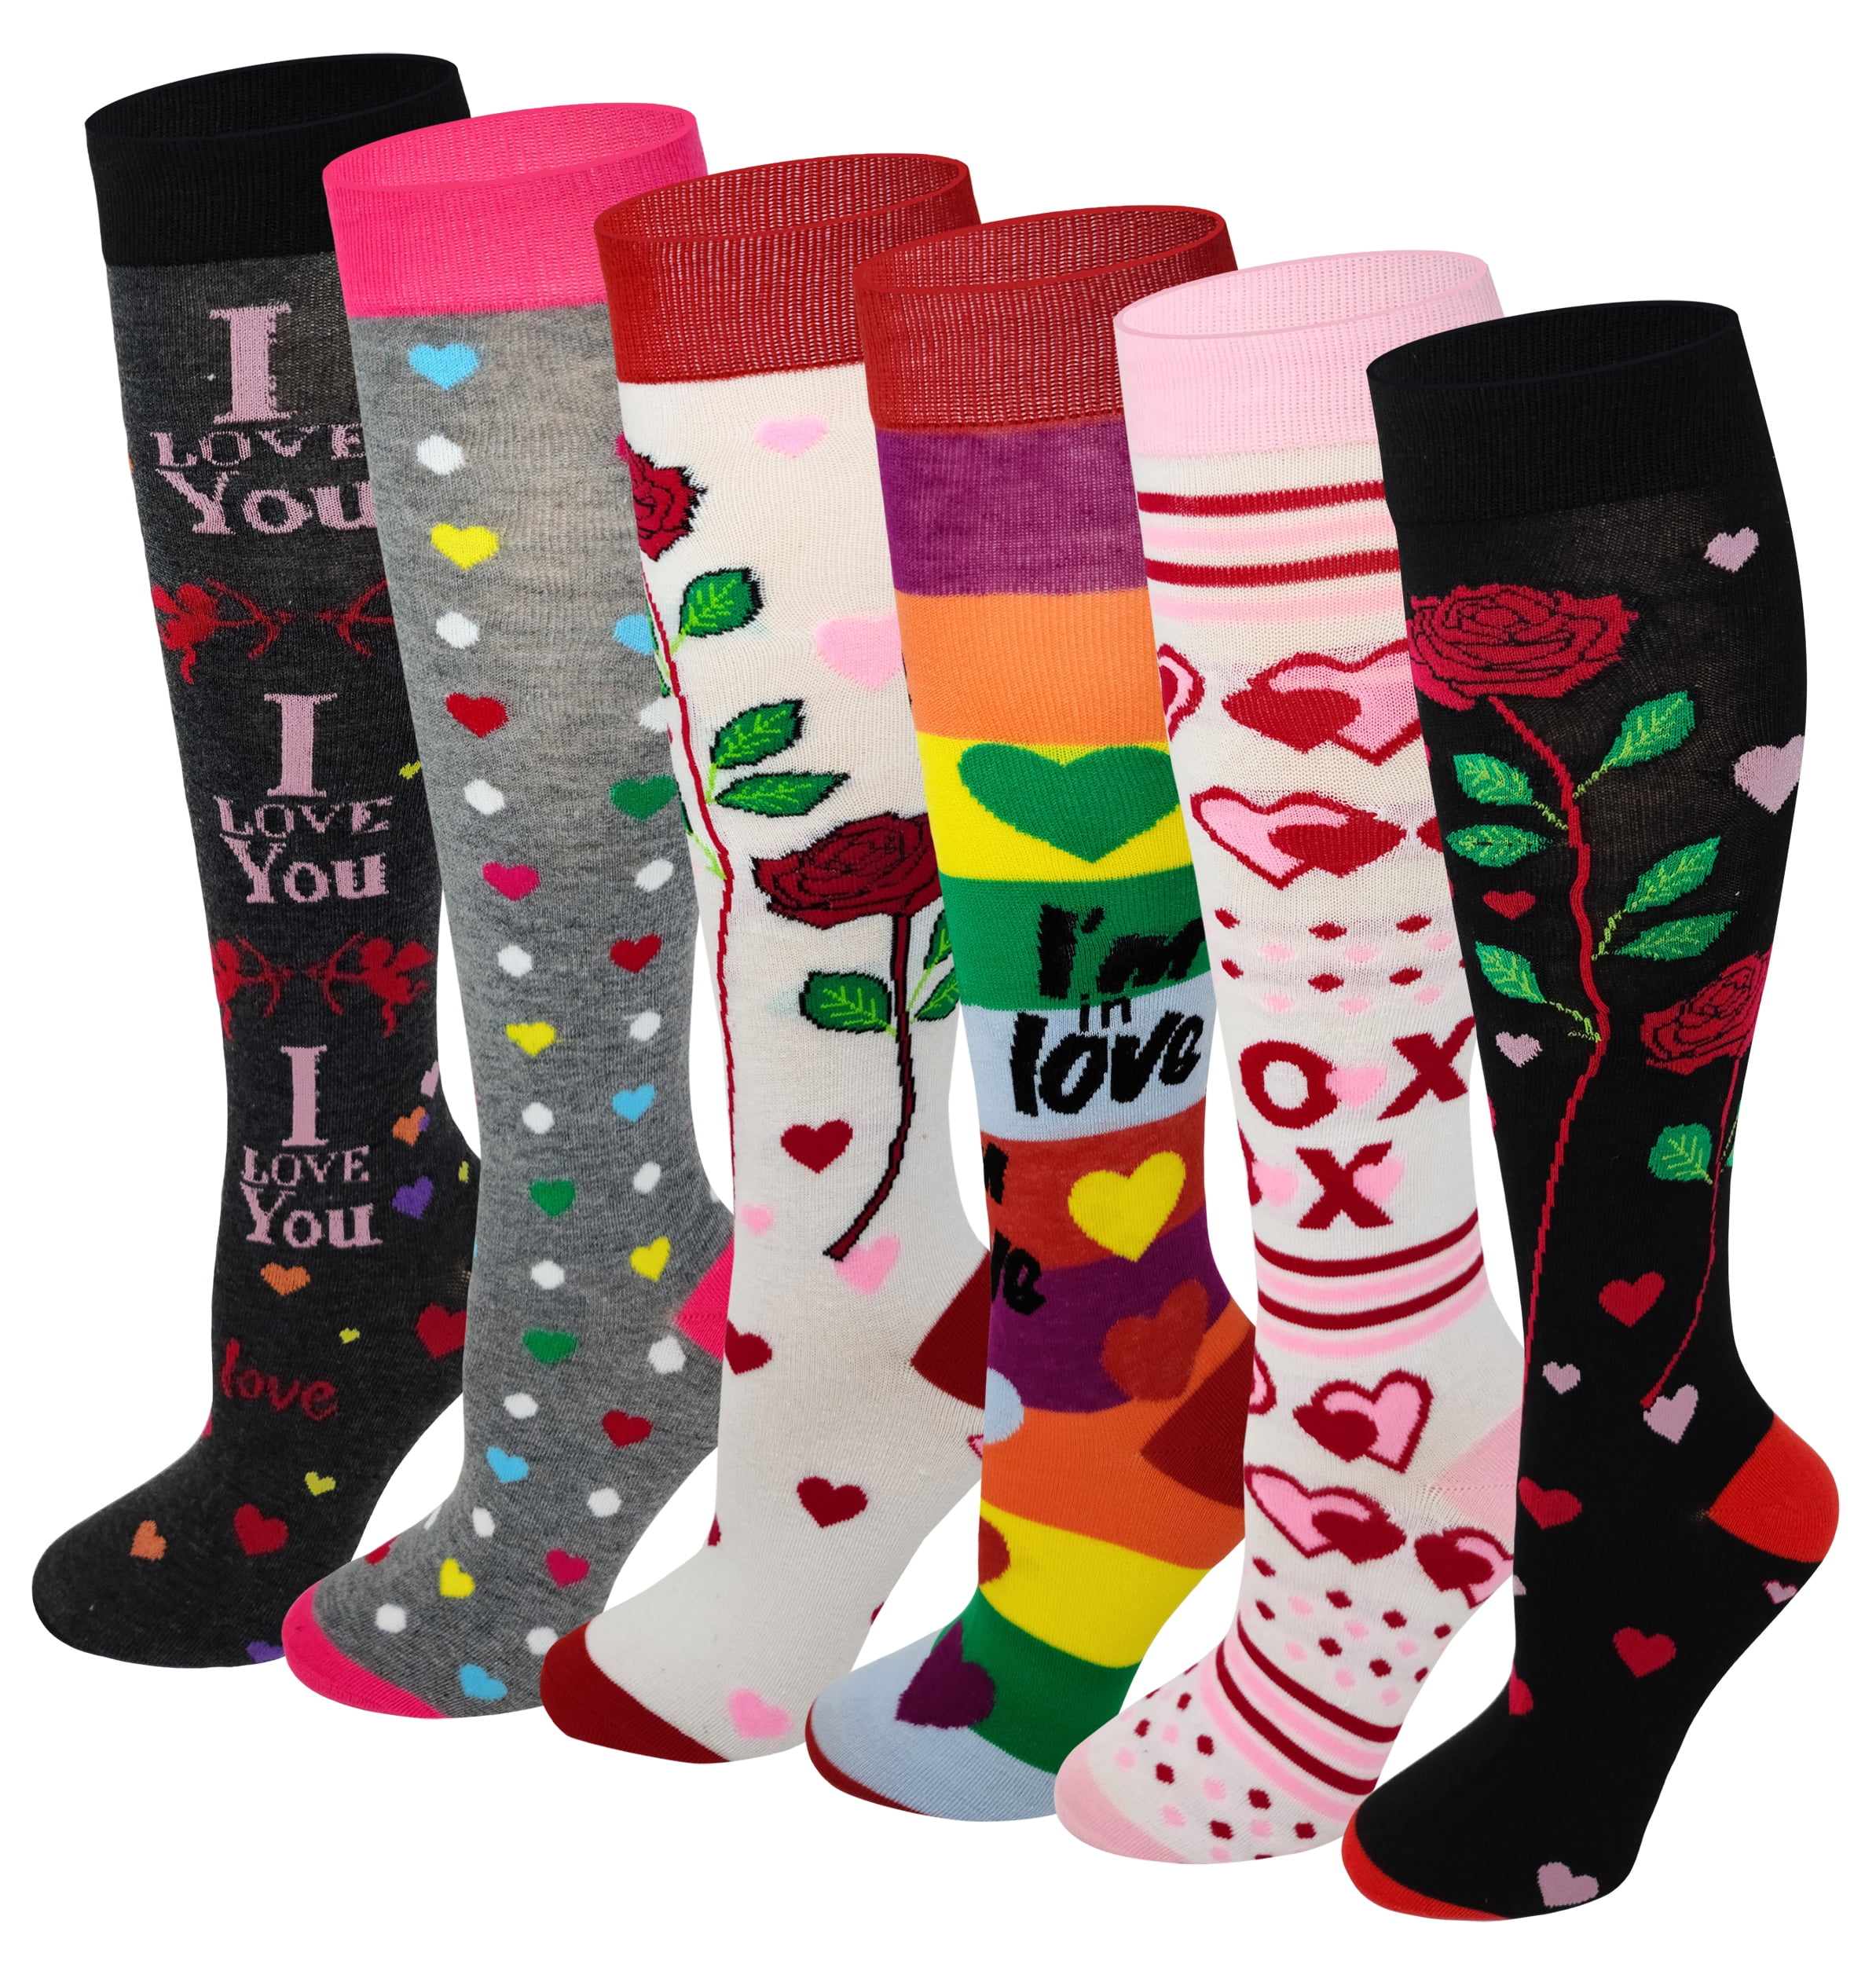 Womens Knee High Socks 2 Pairs Best For Running Christmas Brush Strokes Long Socks For Women